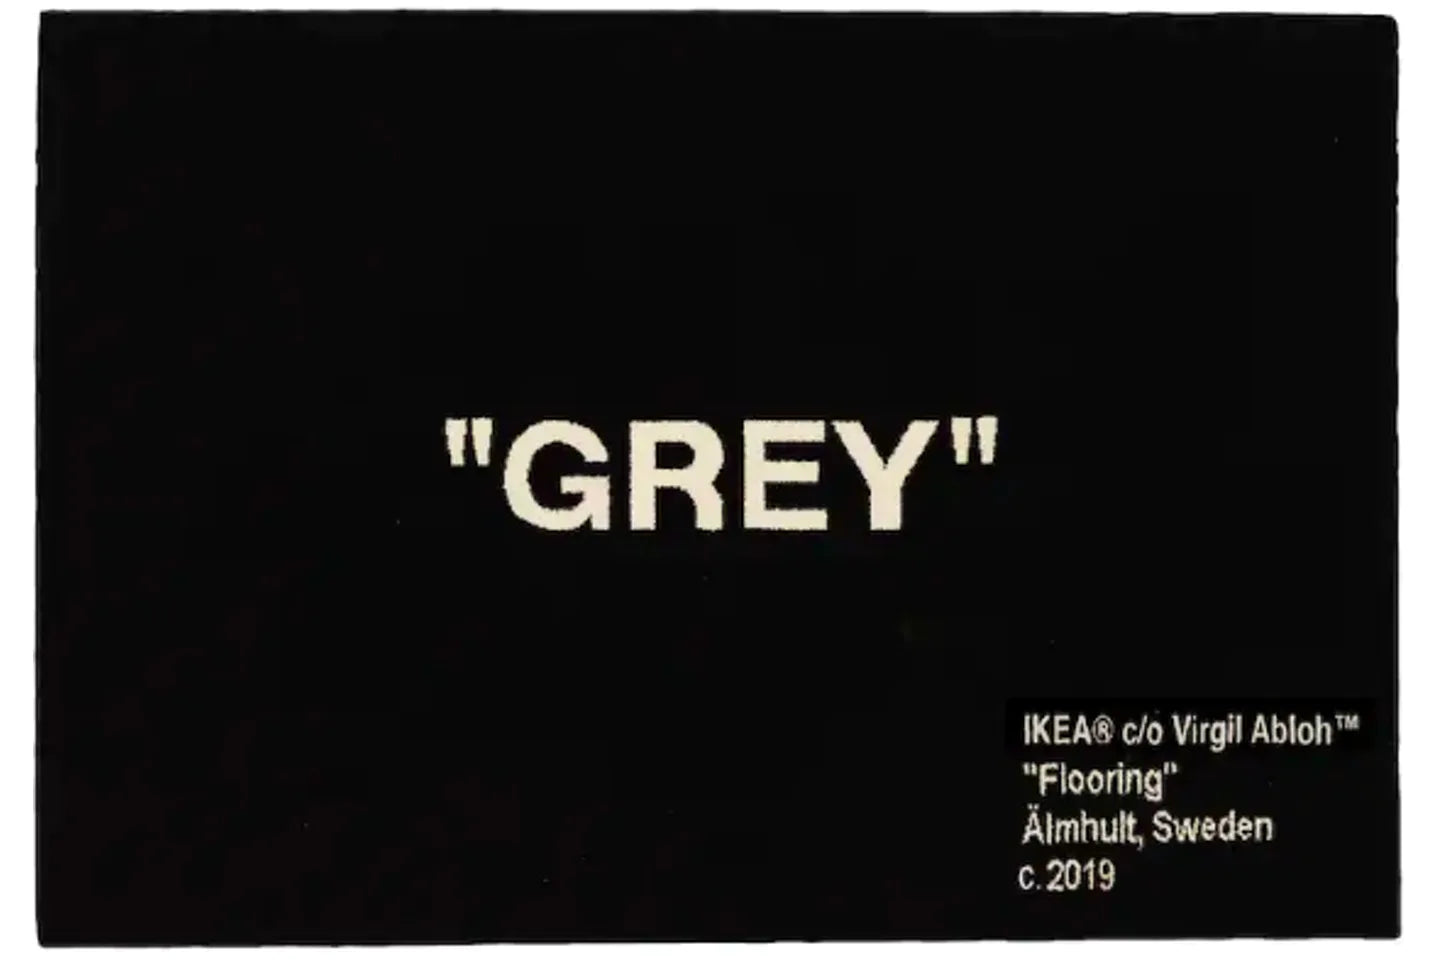 Virgil Abloh x IKEA "GREY" Rug 195x133 CM